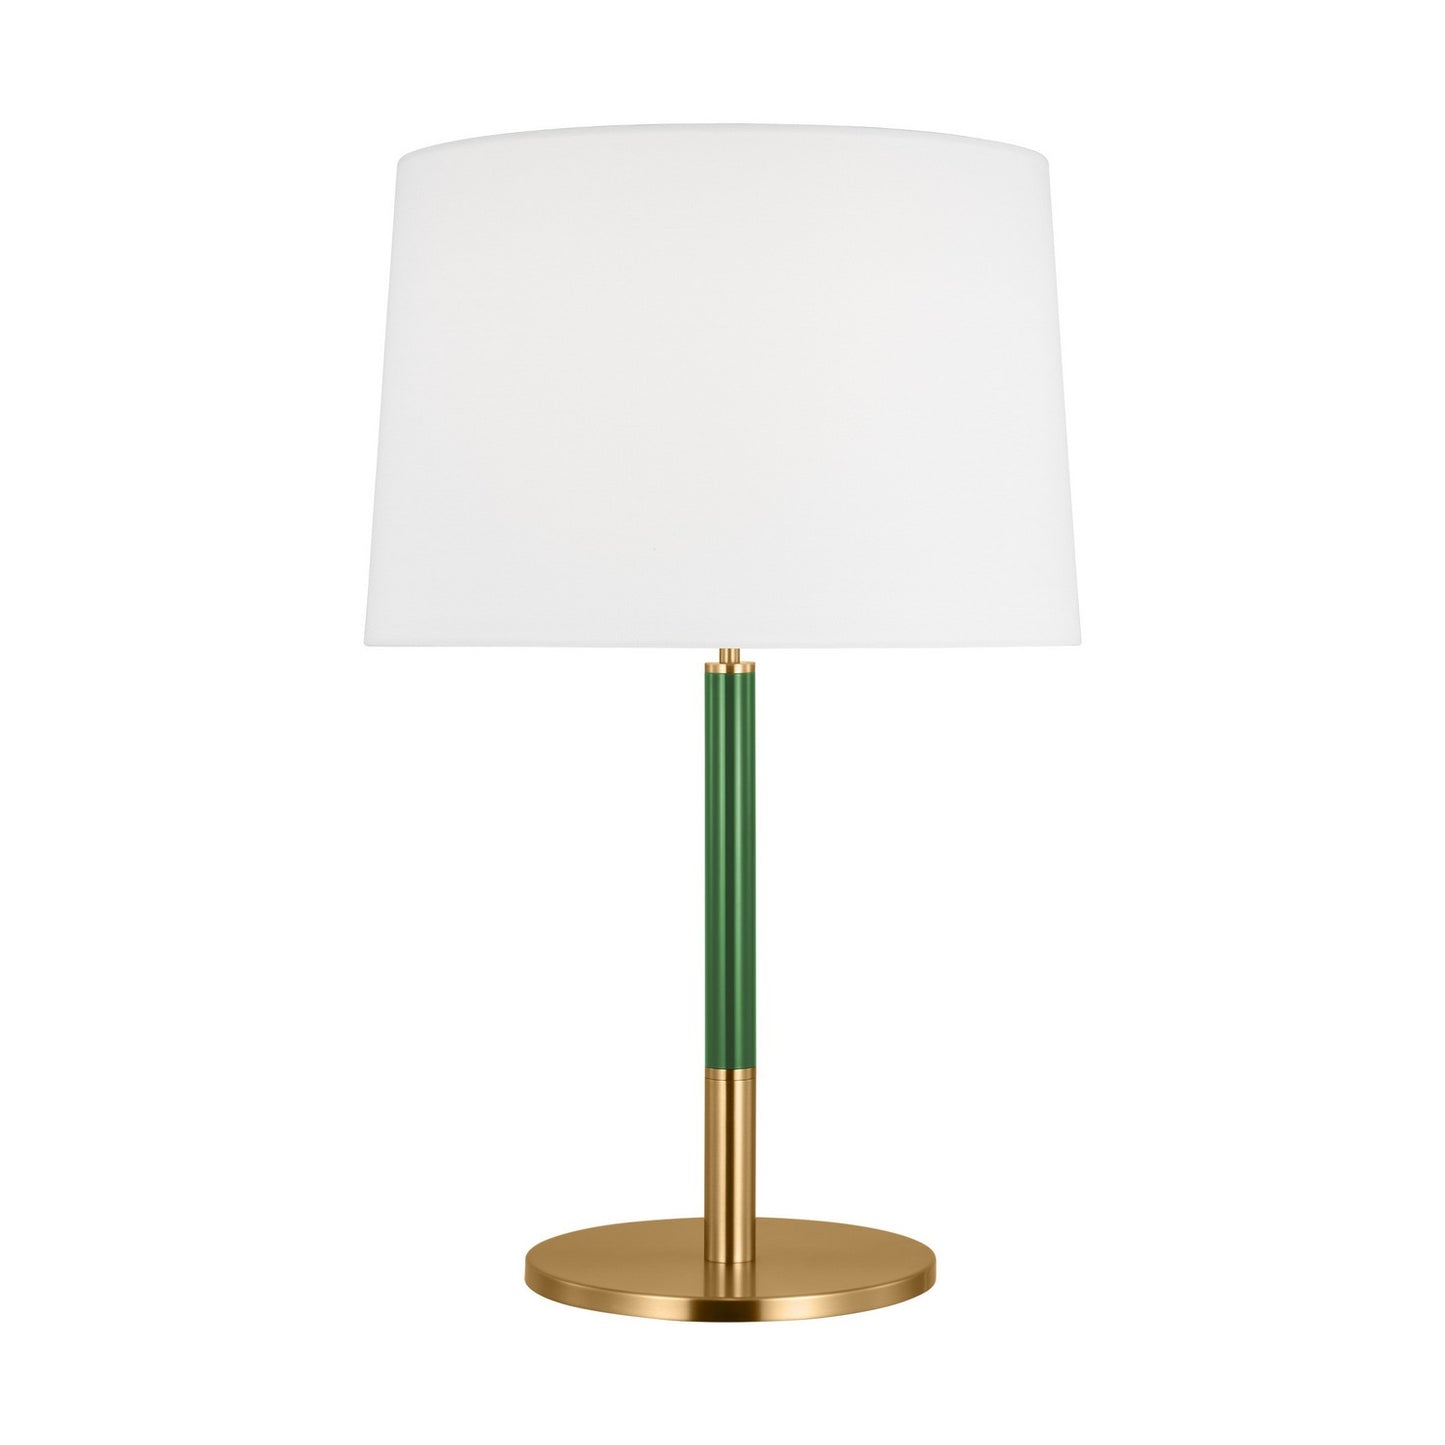 Visual Comfort Studio - KST1041BBSGRN1 - One Light Table Lamp - Monroe - Burnished Brass